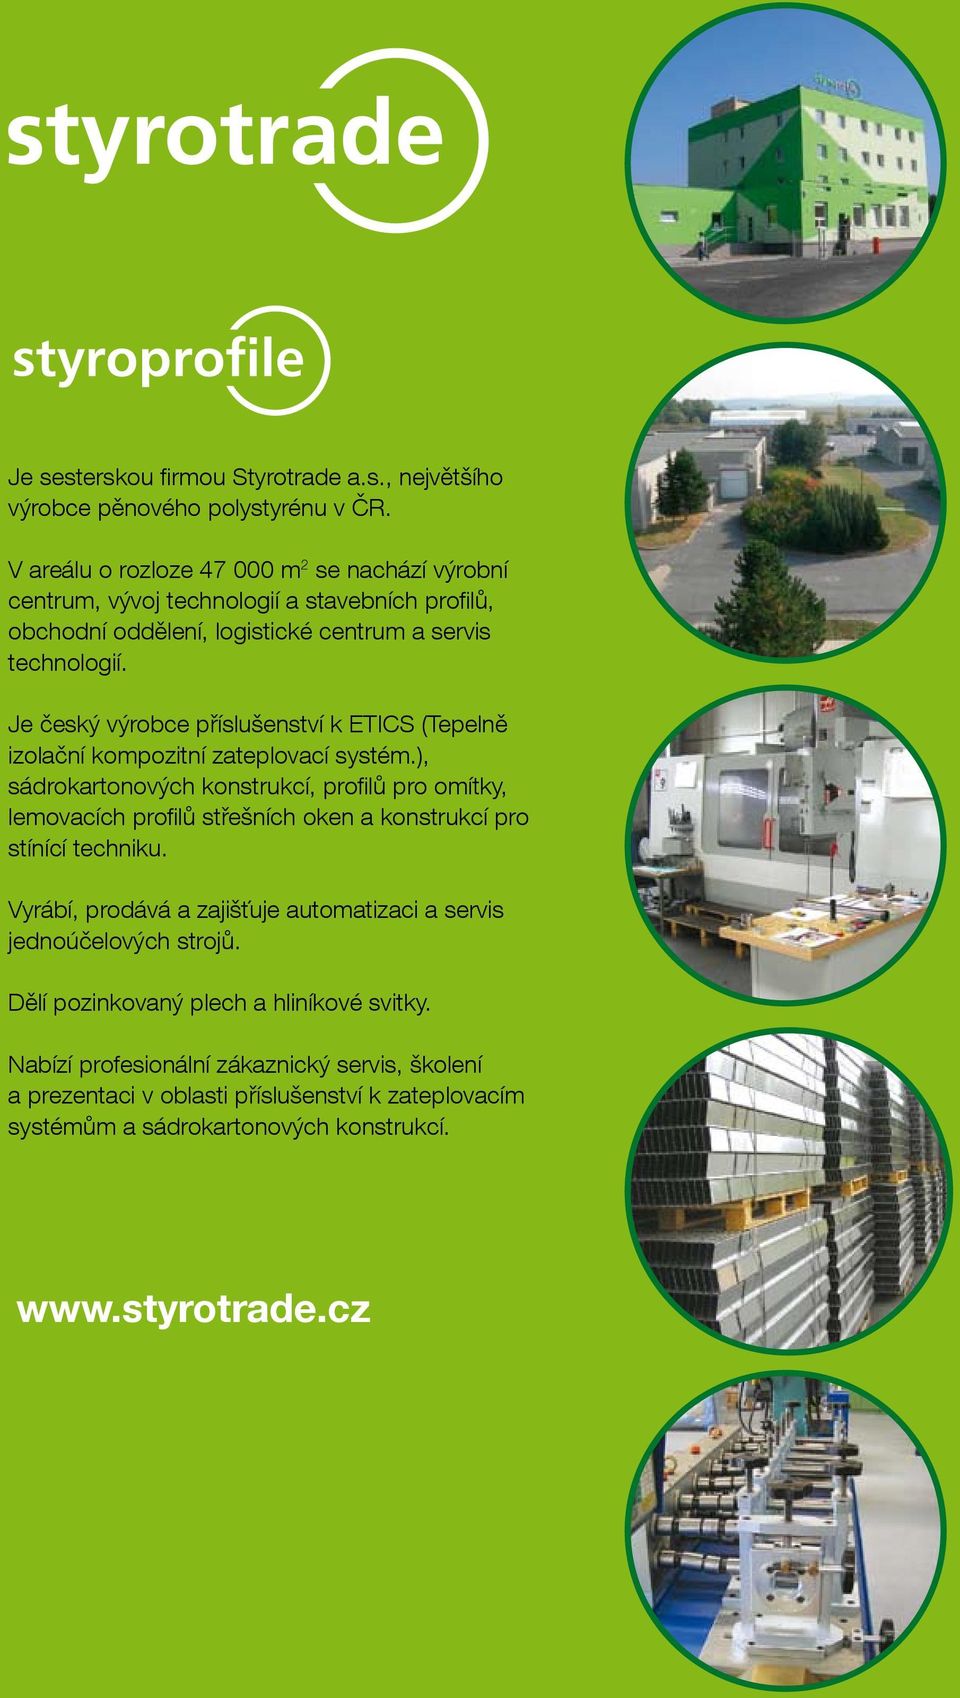 Je český výrobce příslušenství k ETICS (Tepelně izolační kompozitní zateplovací systém.